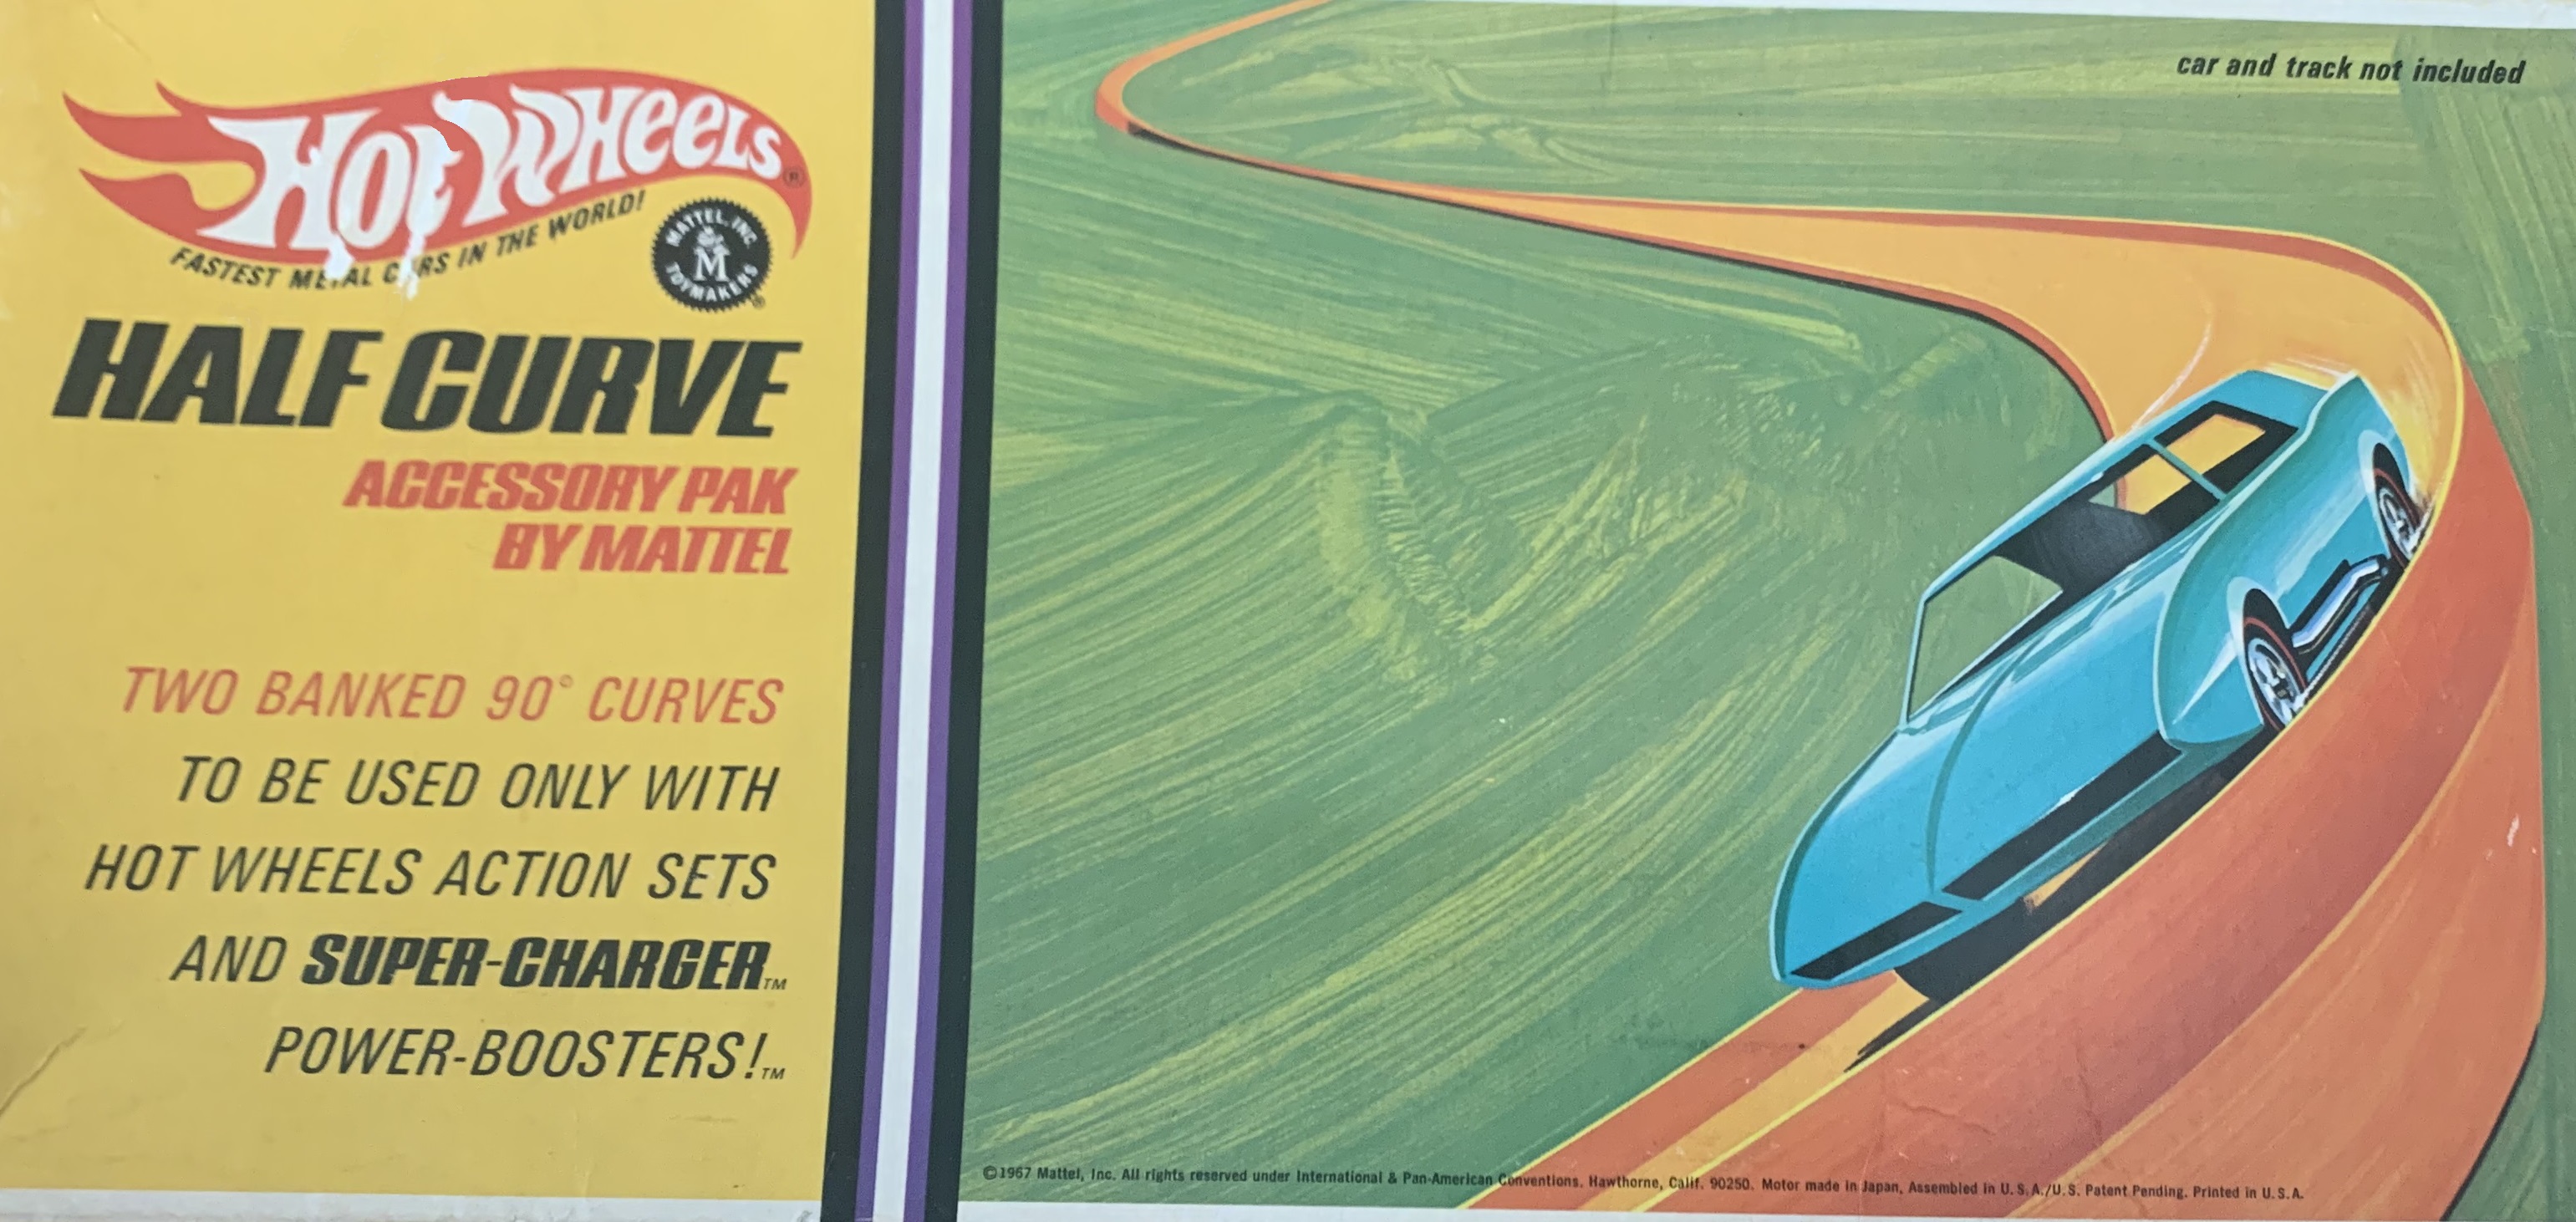 Vintage original Mattel Hot Wheels redline… 1967 Half Curve Accessory pack  … A